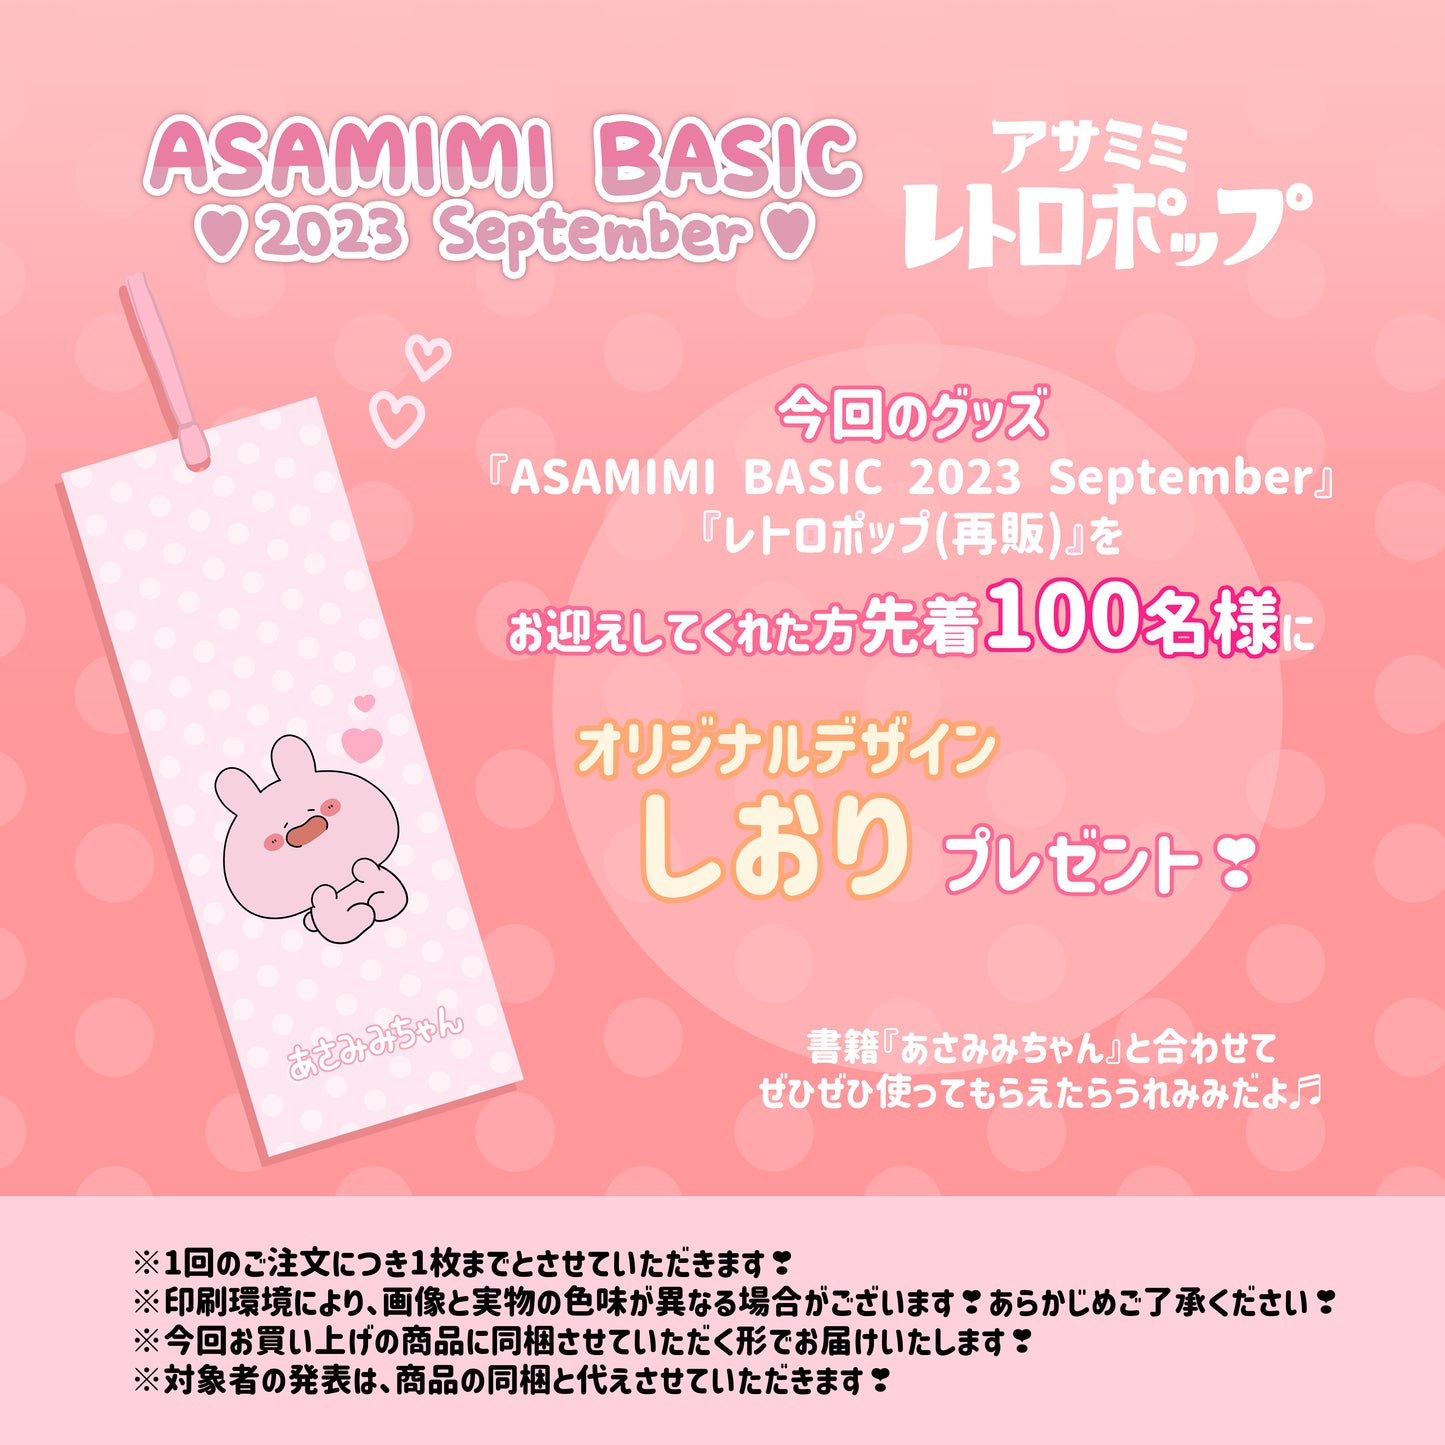 [Asamimi-chan] Possessore del biglietto Pienga Ippai (ASAMIMI BASIC 2023 settembre)